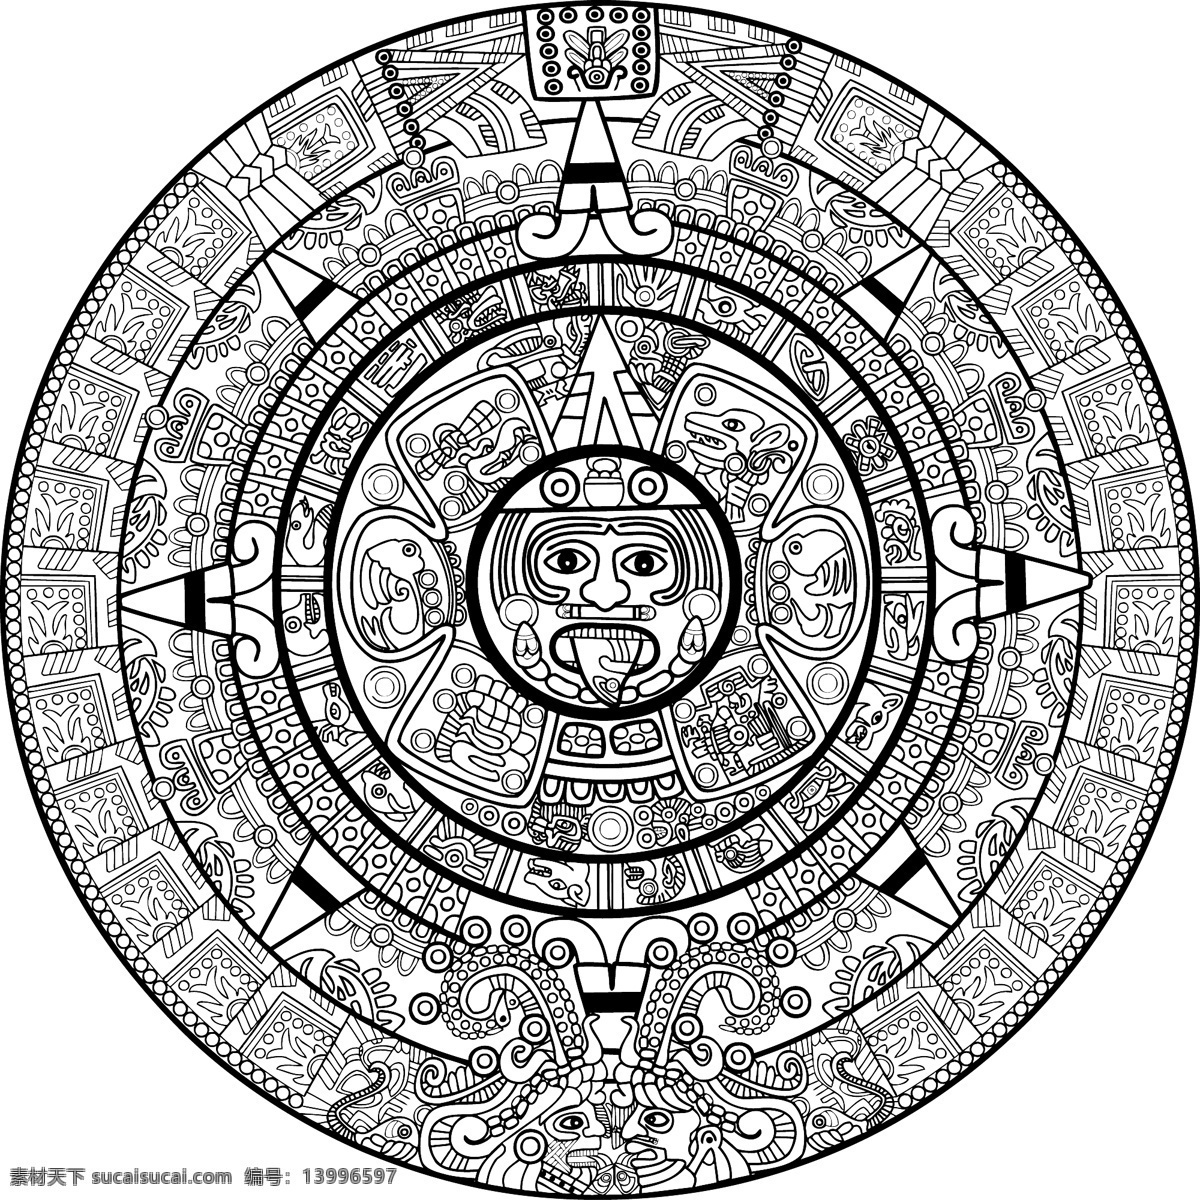 玛雅符文符号 玛雅 符文 符号 古老 图形 纹样 其他设计 矢量